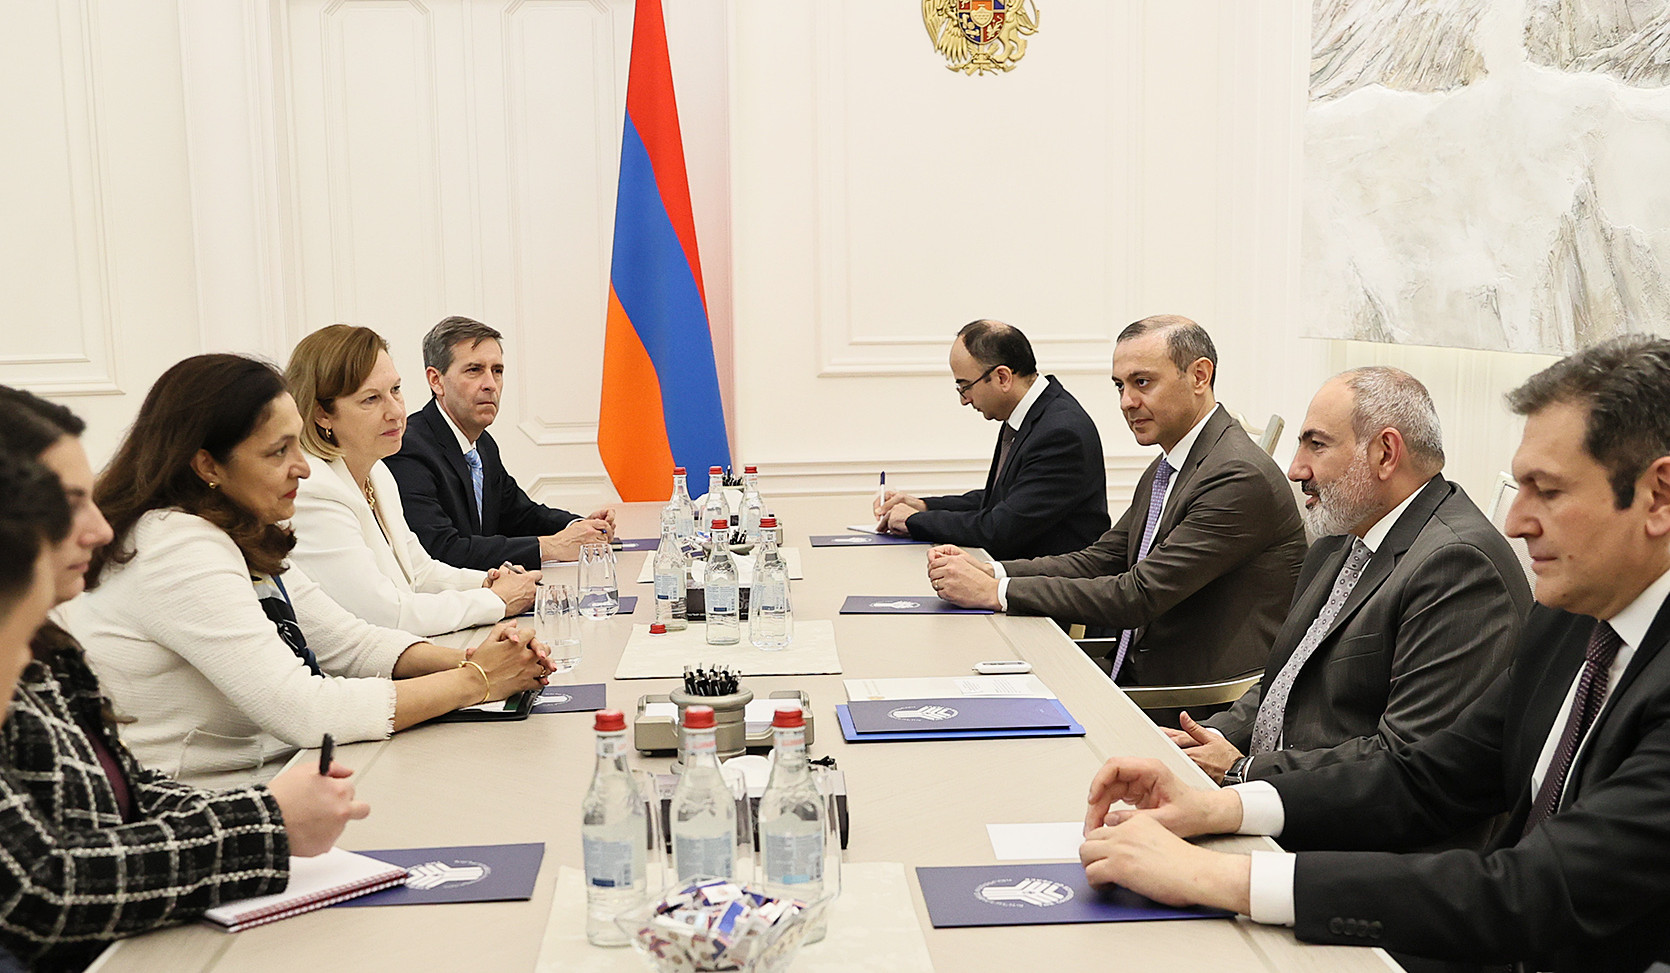 ՀՀ վարչապետի և ԱՄՆ պետքարտուղարի տեղակալի հանդիպմանն անդրադարձ է եղել Հայաստանի և Ադրբեջանի միջև խաղաղության գործընթացին